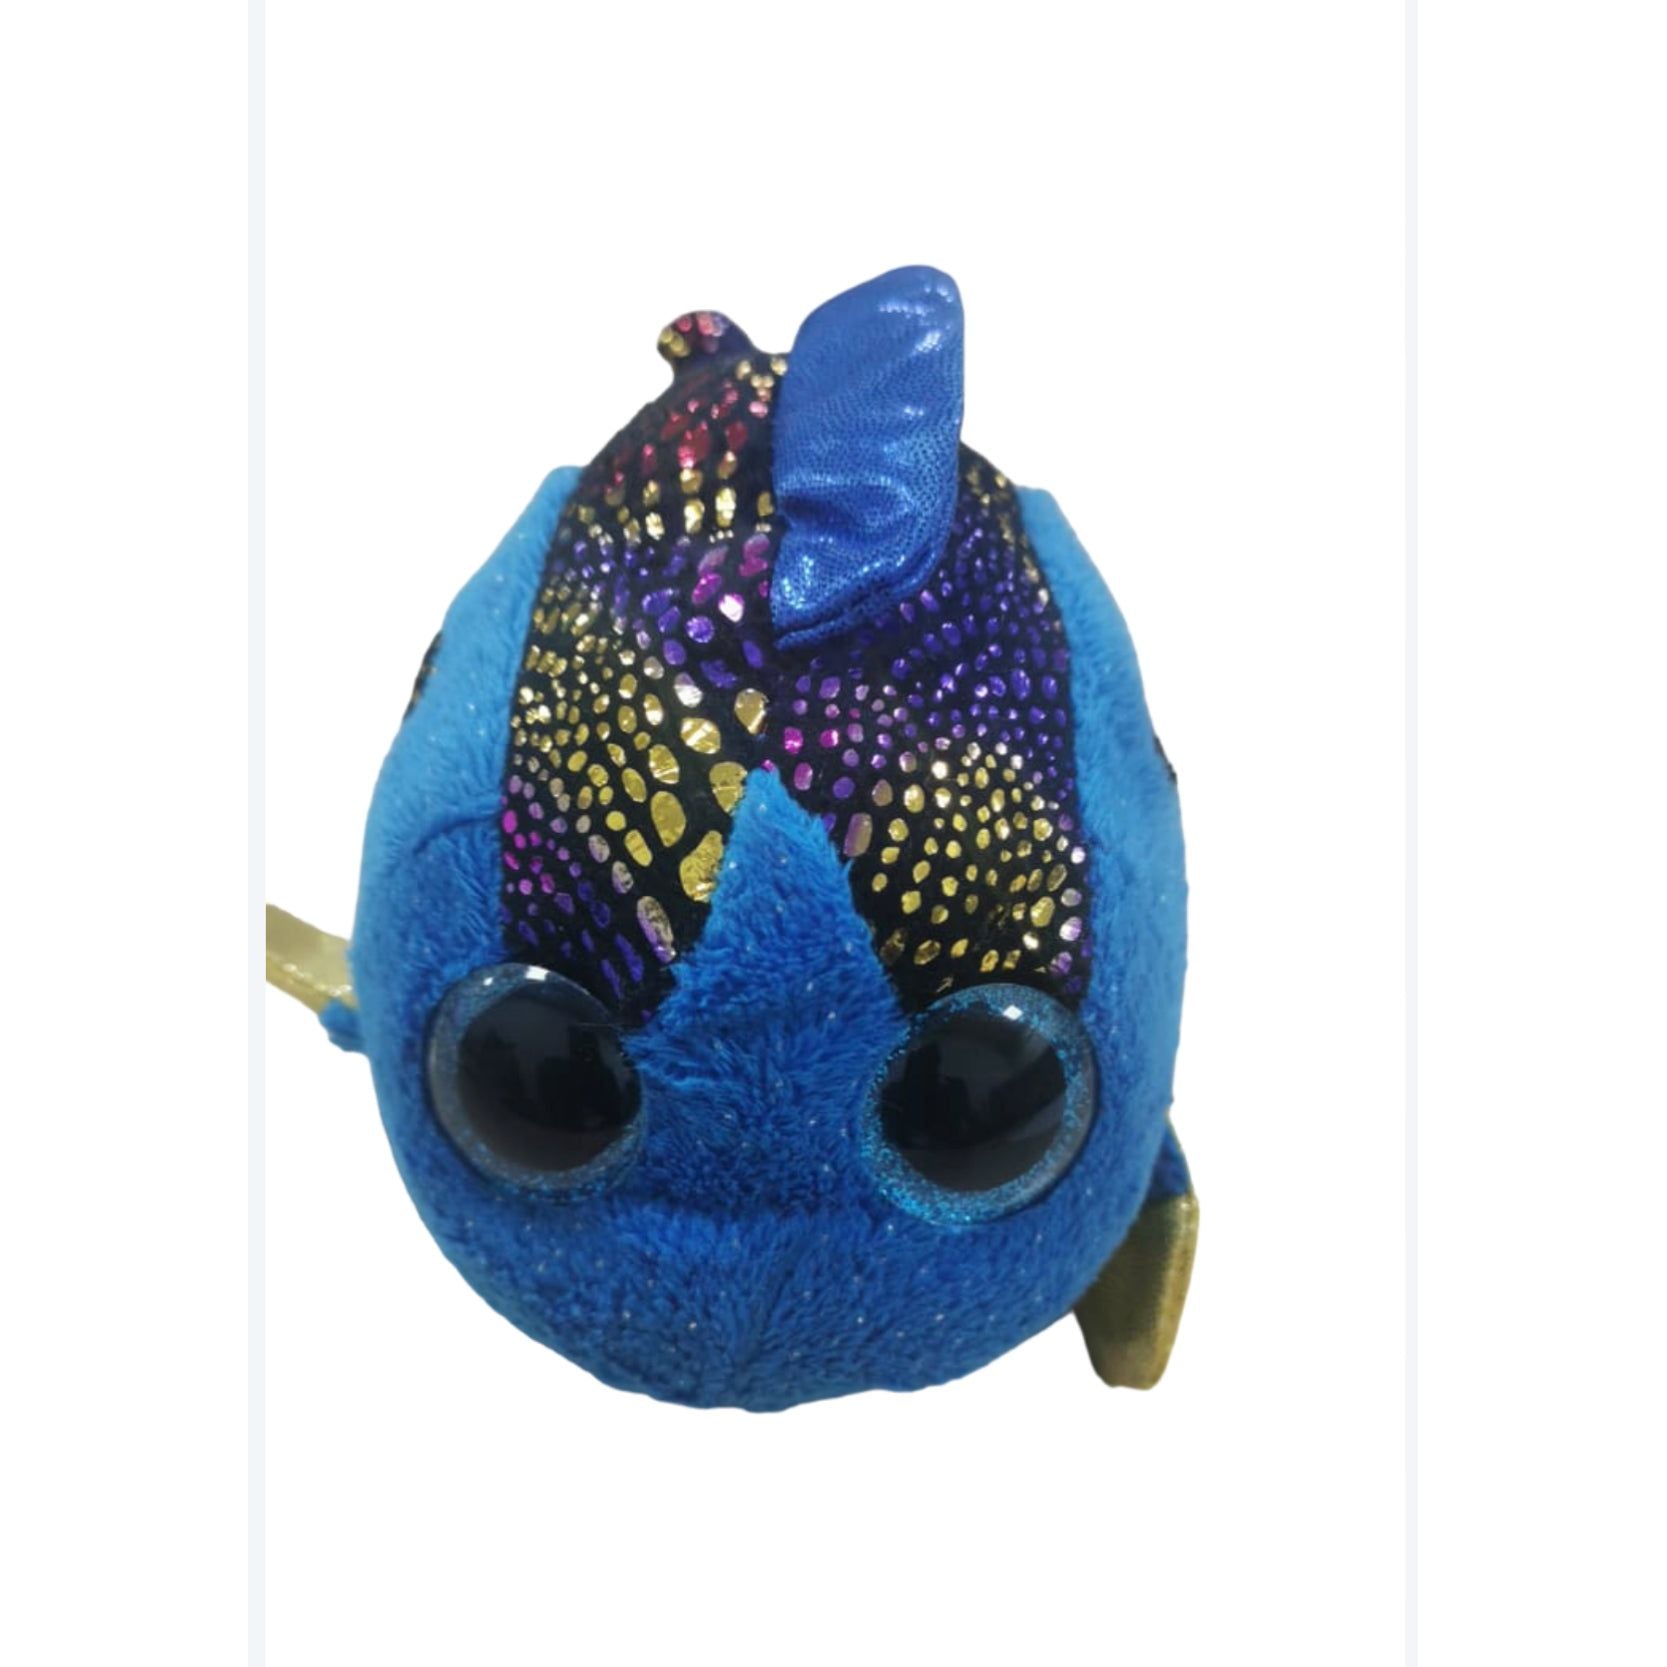 Pibi Cute & Supersoft Fish Plush Toy 15 cm Blue Age - Newborn & Above